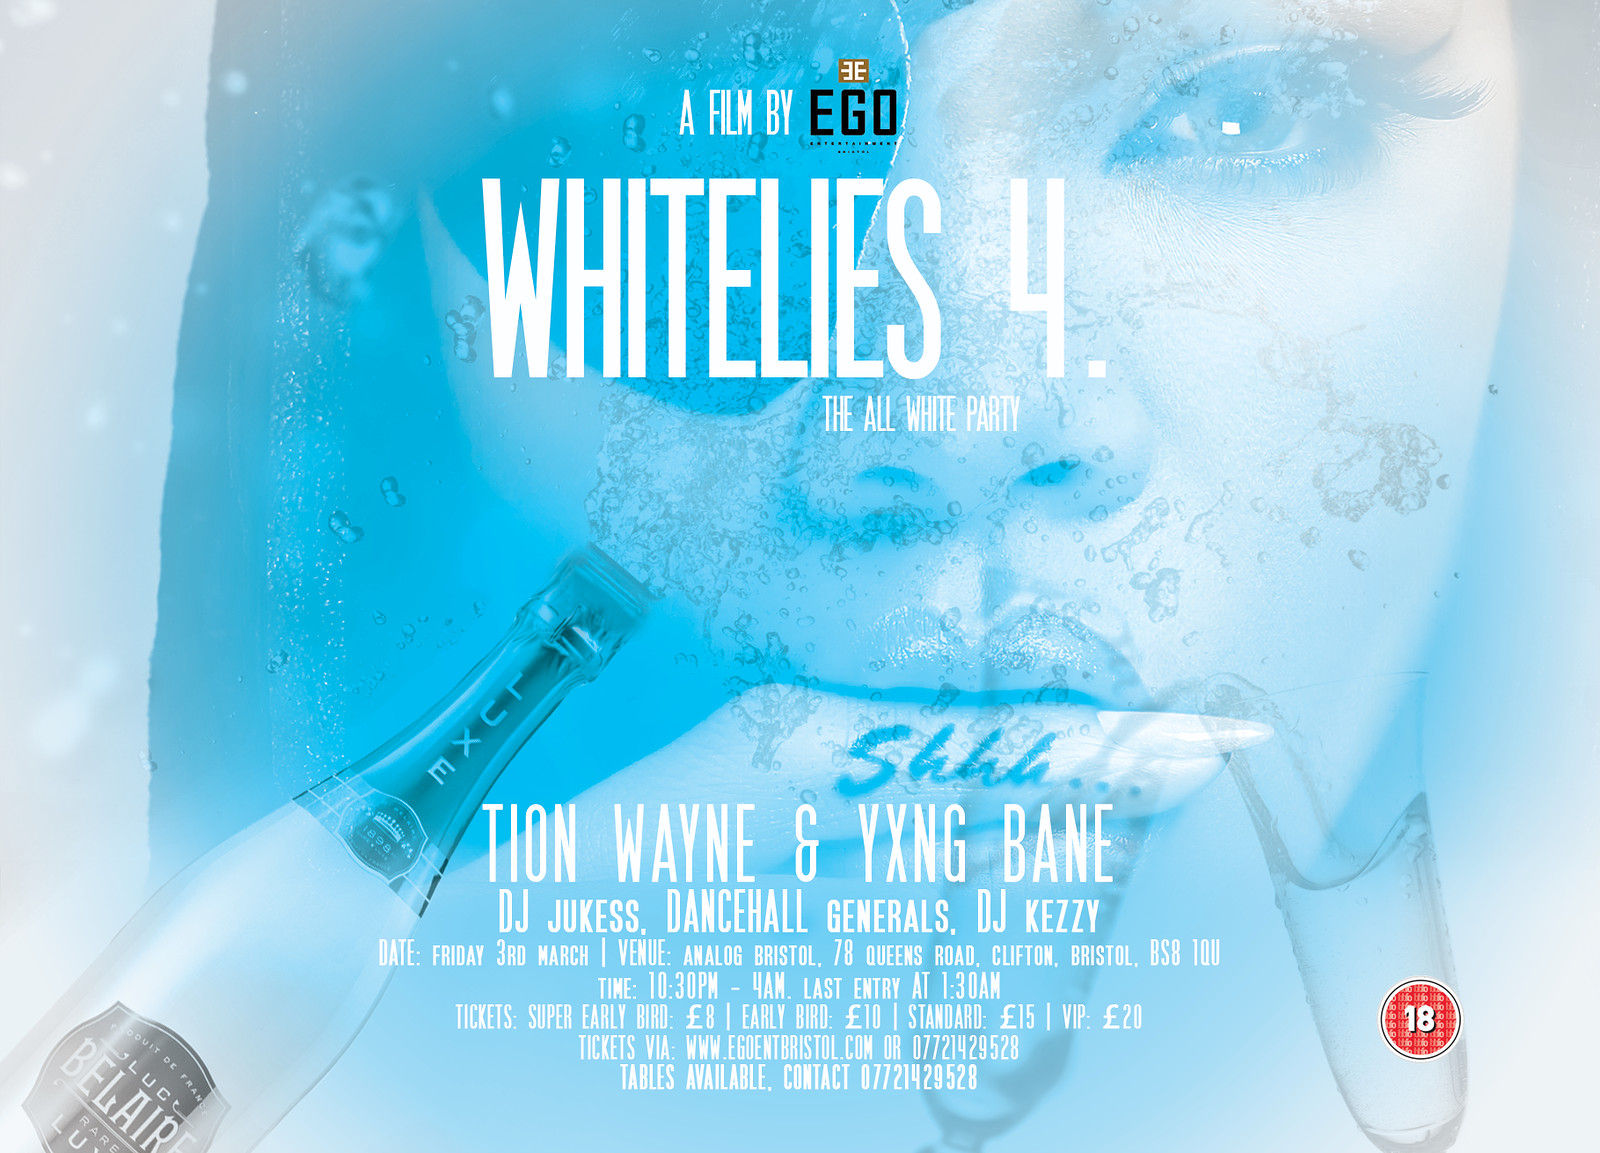 WhiteLies 4: The All White Party at Analog